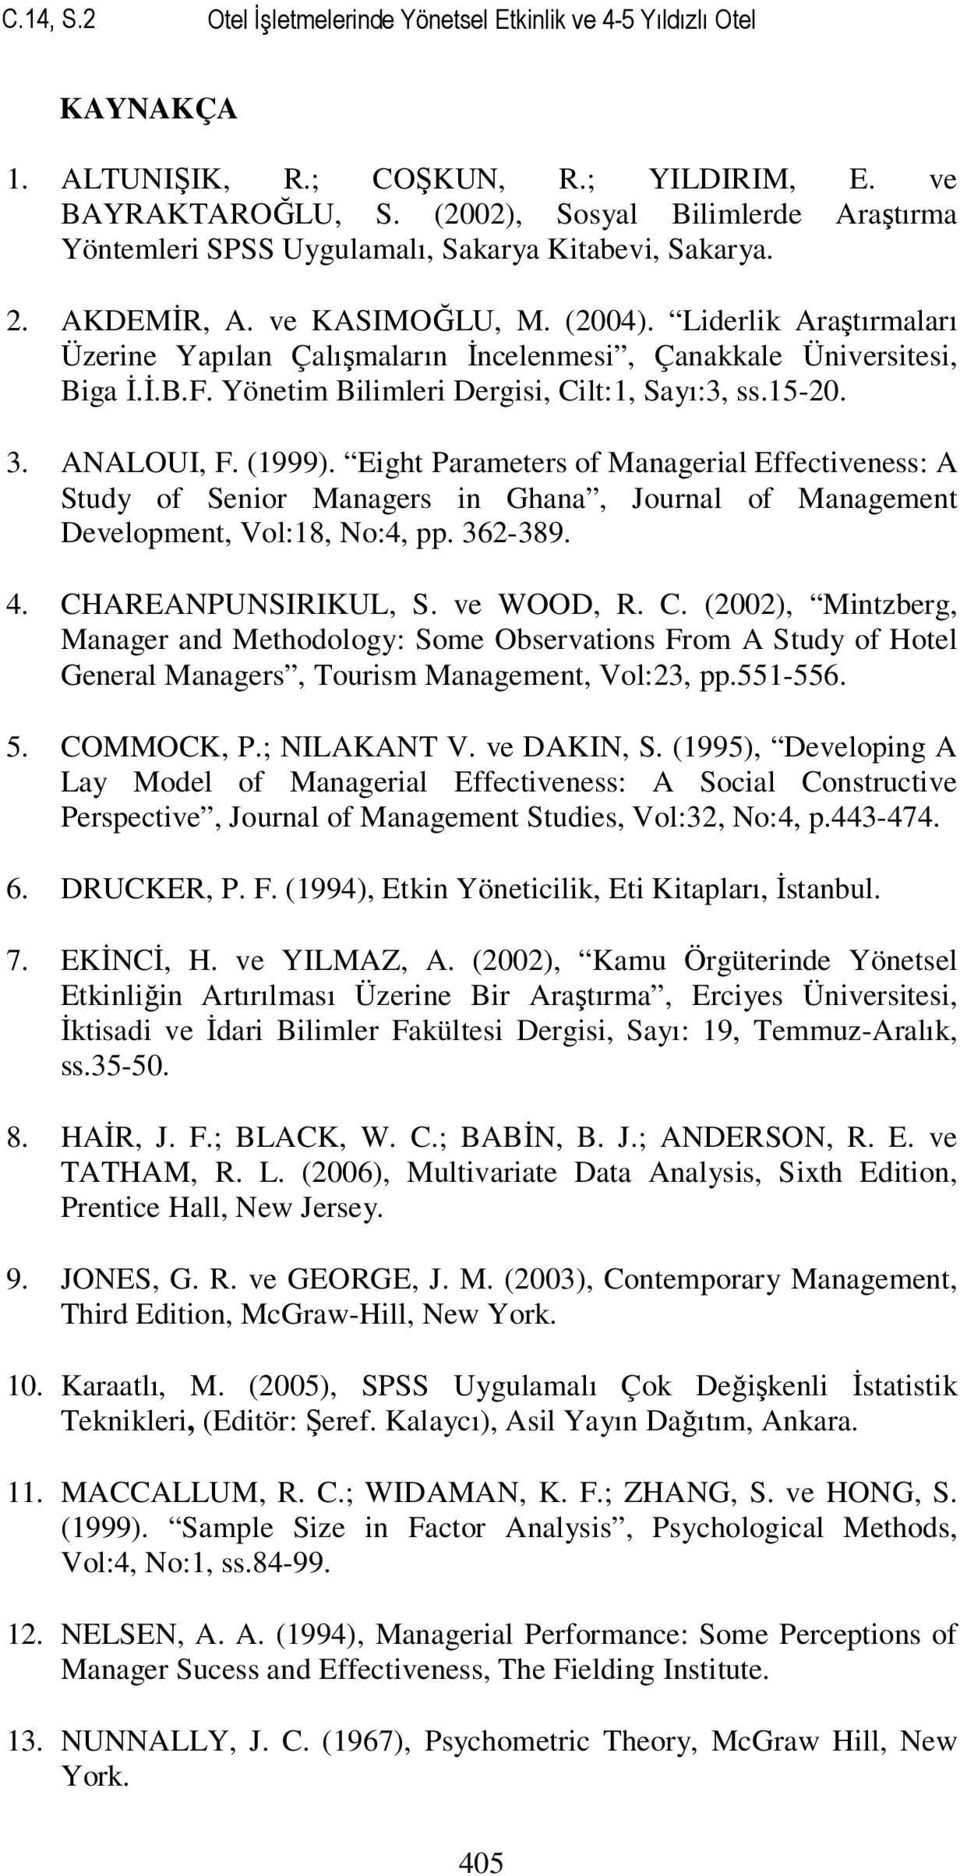 Liderlik Araştırmaları Üzerine Yapılan Çalışmaların İncelenmesi, Çanakkale Üniversitesi, Biga İ.İ.B.F. Yönetim Bilimleri Dergisi, Cilt:1, Sayı:3, ss.15-20. 3. ANALOUI, F. (1999).